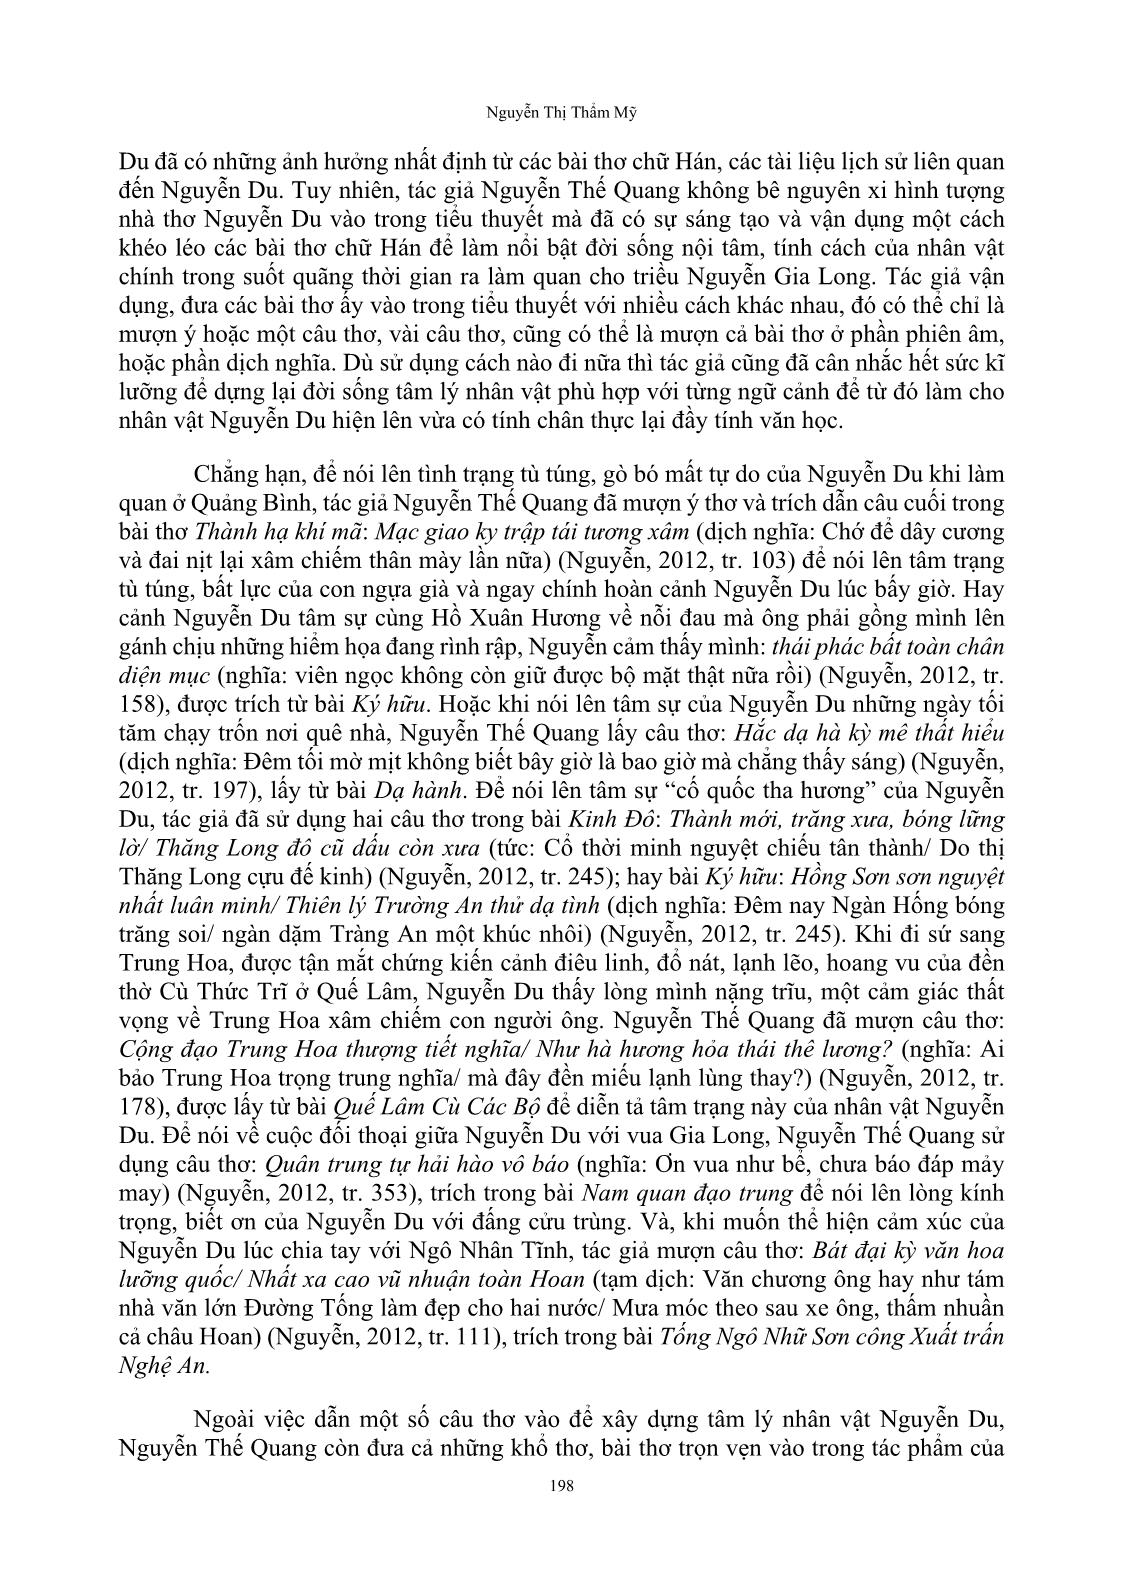 Nhân vật Nguyễn Du từ thơ đến tiểu thuyết trang 9